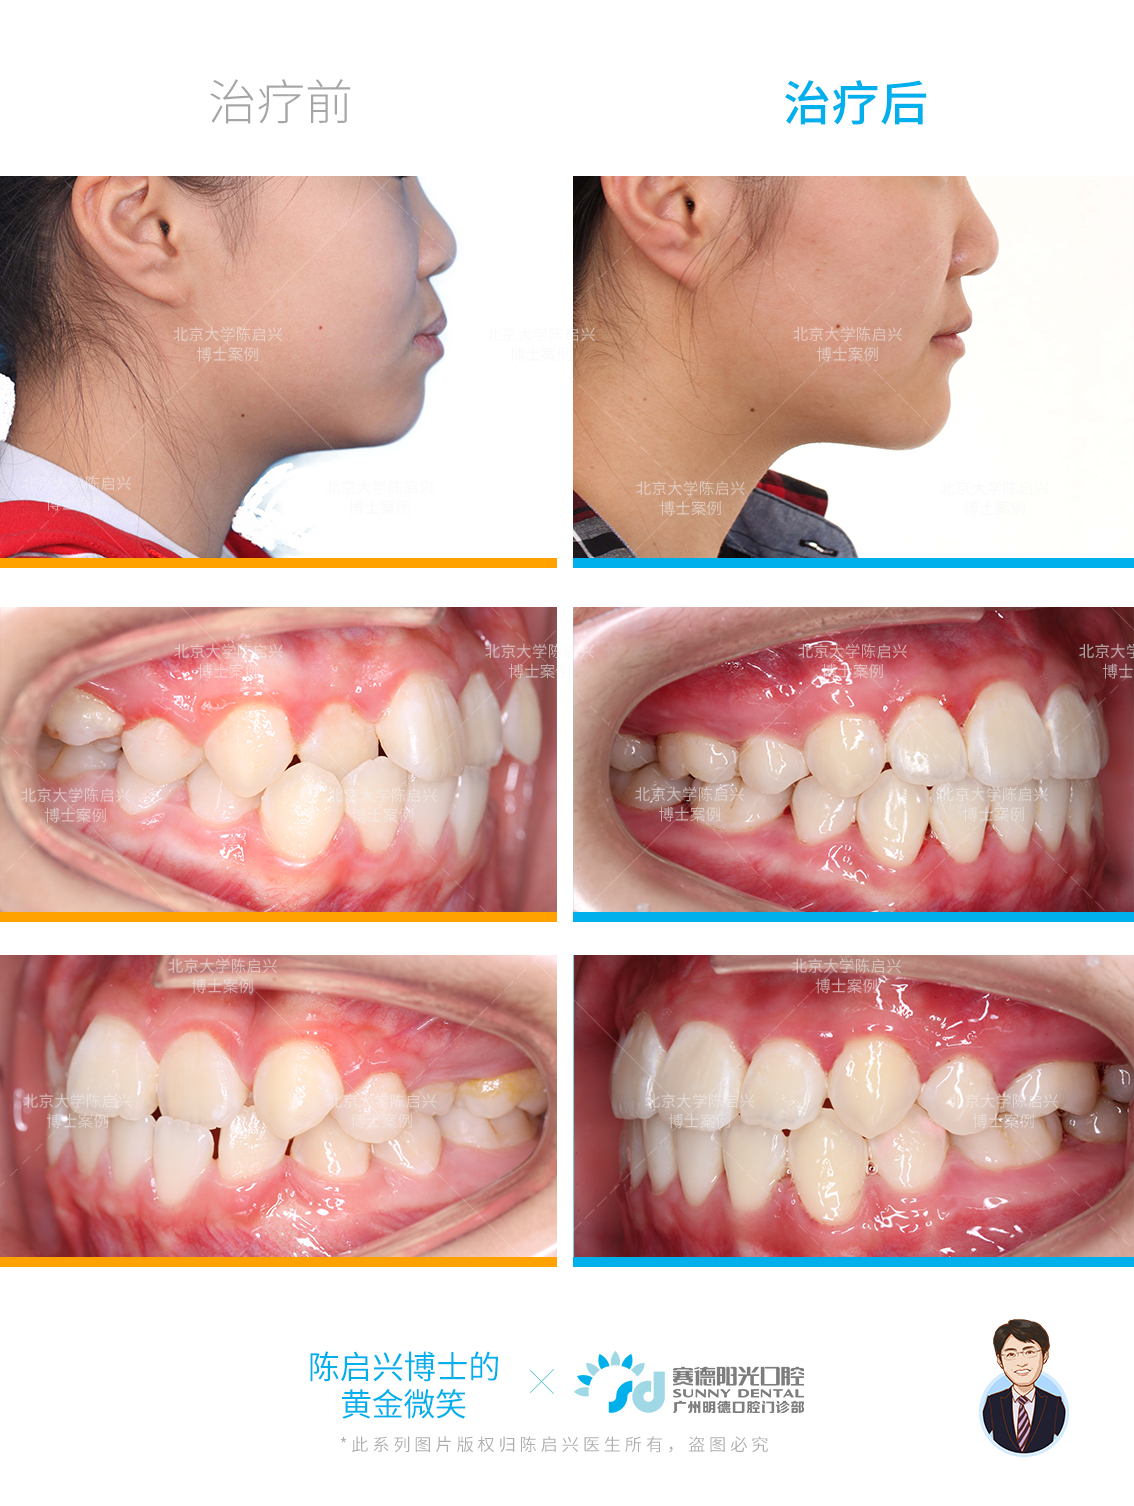 昆明牙齿矫正| 不拔牙矫正案例| 一年半时间深覆合、牙弓狭窄问题改善明显 - 知乎